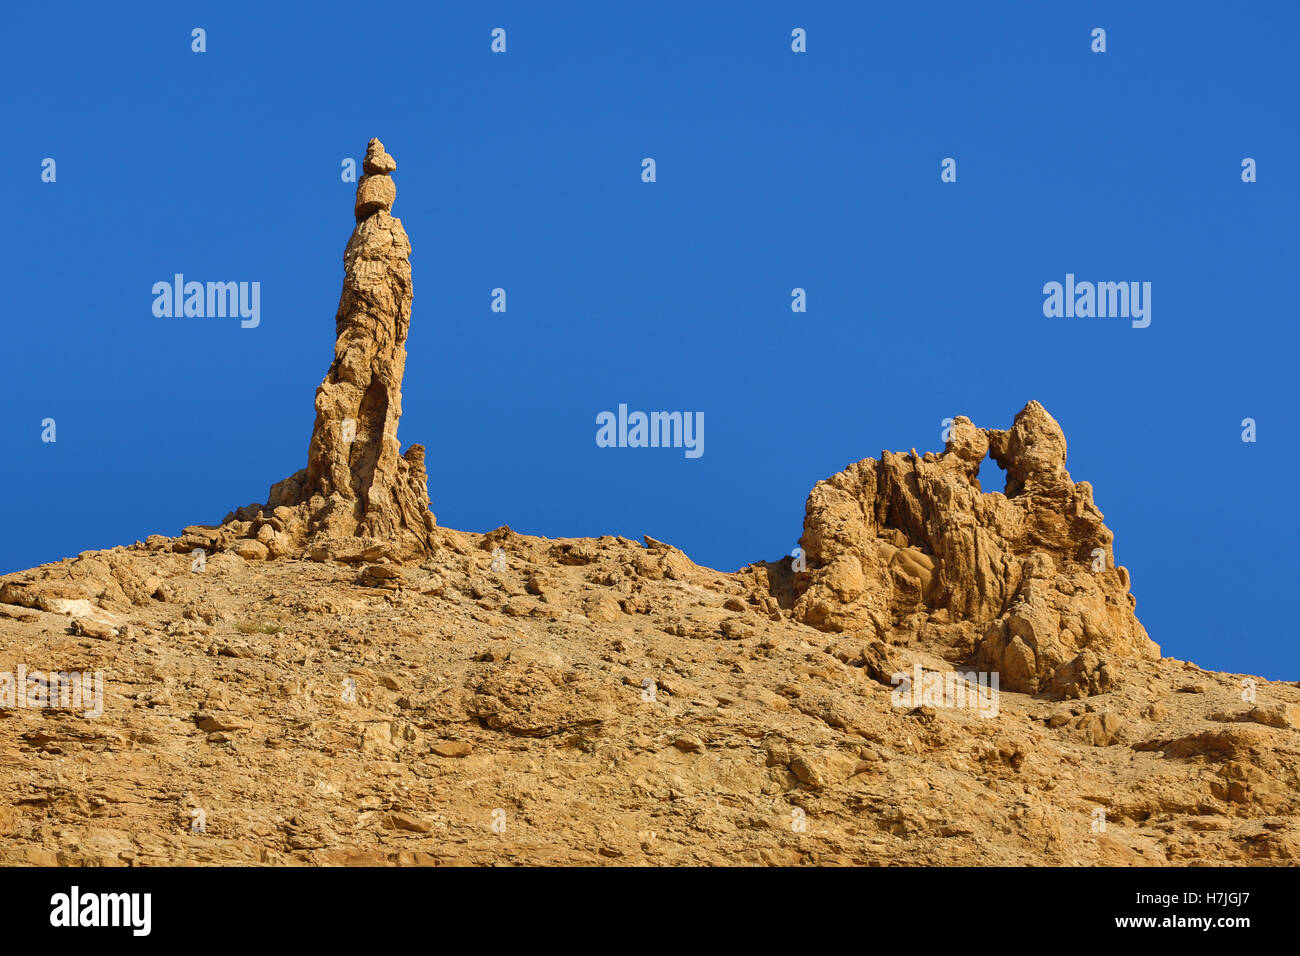 La femme de Lot statue de sel rock formation à côté de la Mer Morte, Jordanie Banque D'Images